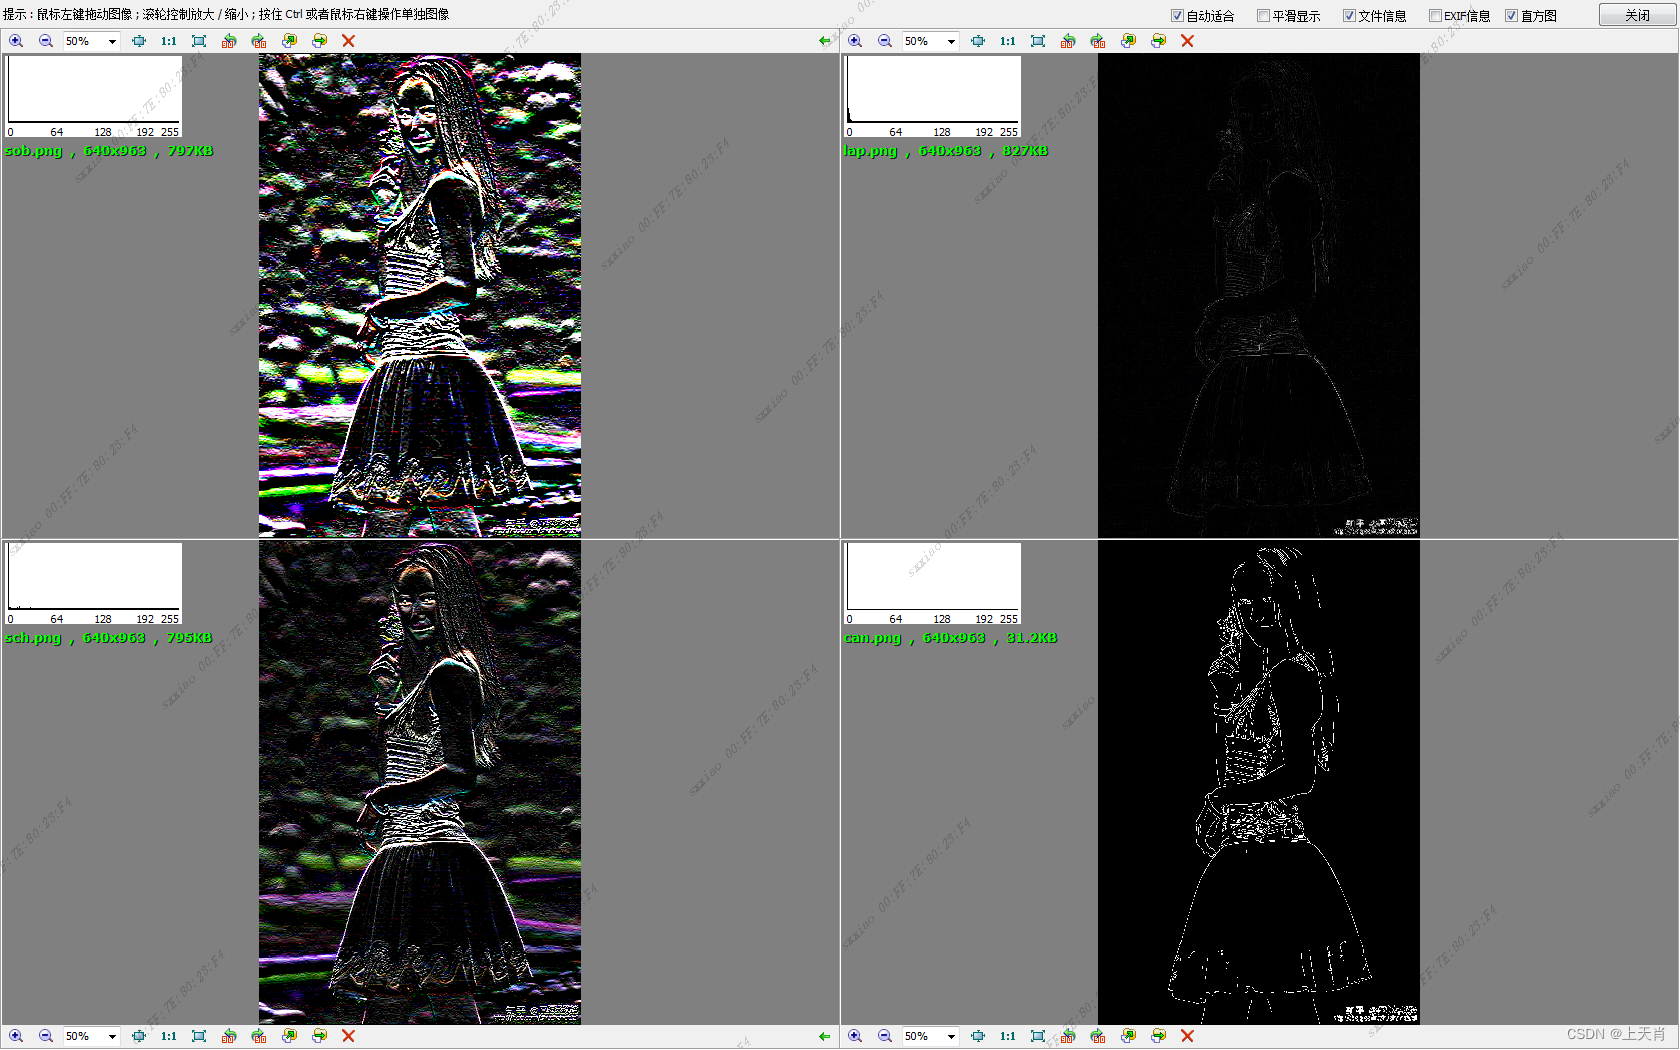 基于PyQt5的桌面图像调试仿真平台开发(13)图像边缘显示